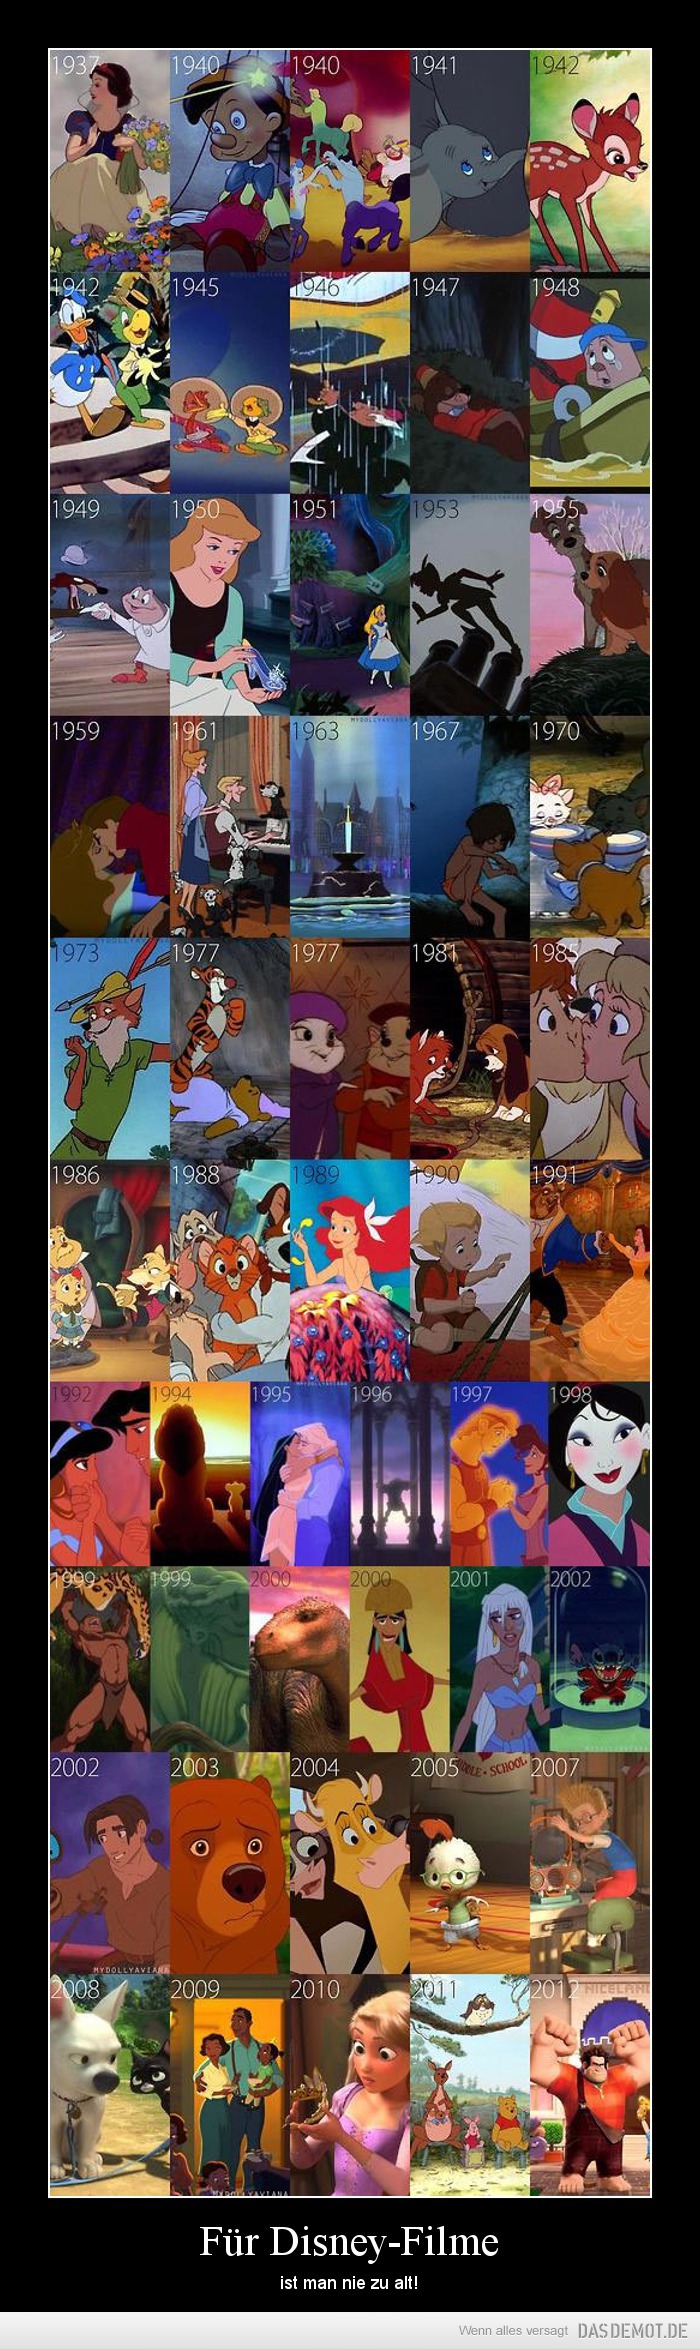 Für Disney-Filme – ist man nie zu alt! 